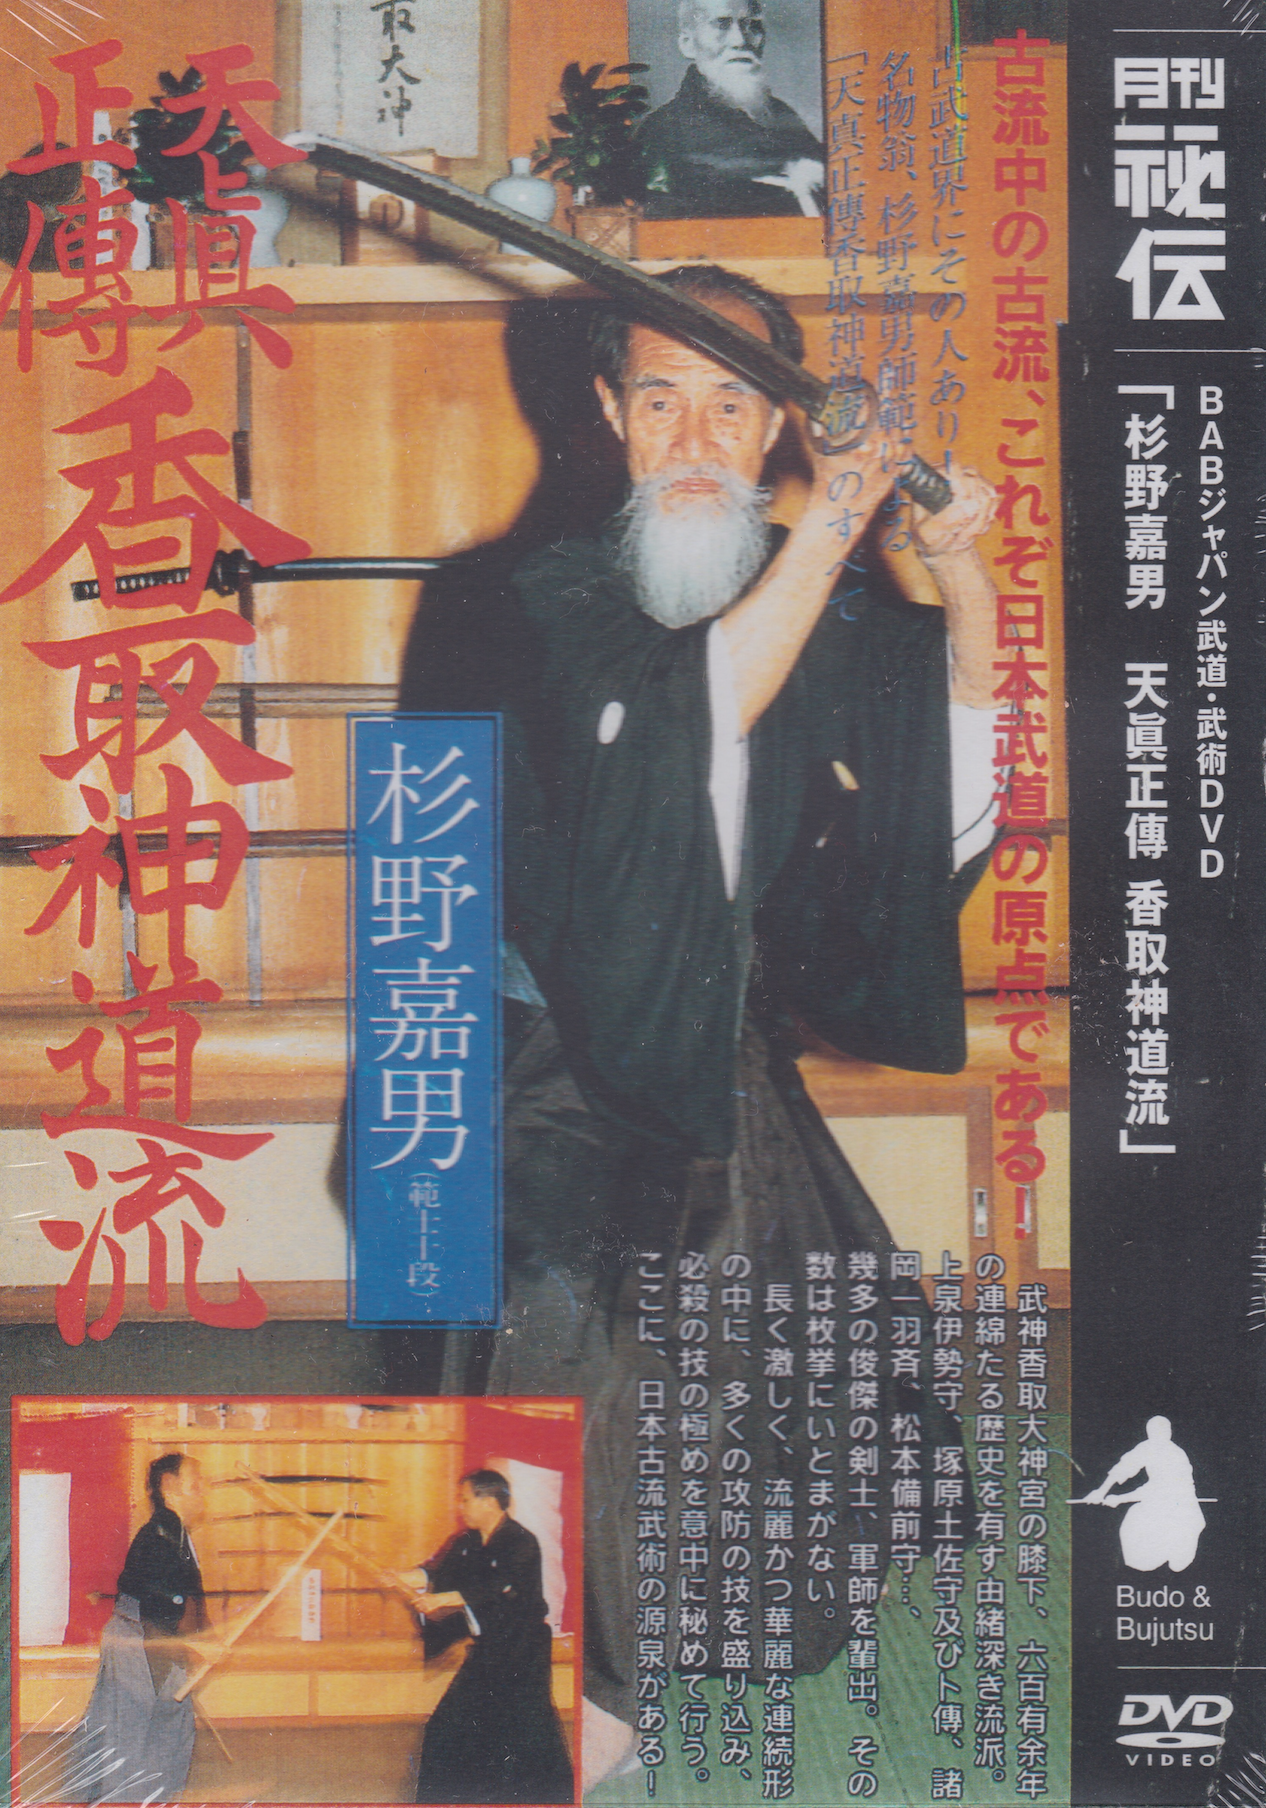 Tenshin Shoden Katori Shinto Ryu con Yoshio Sugino DVD